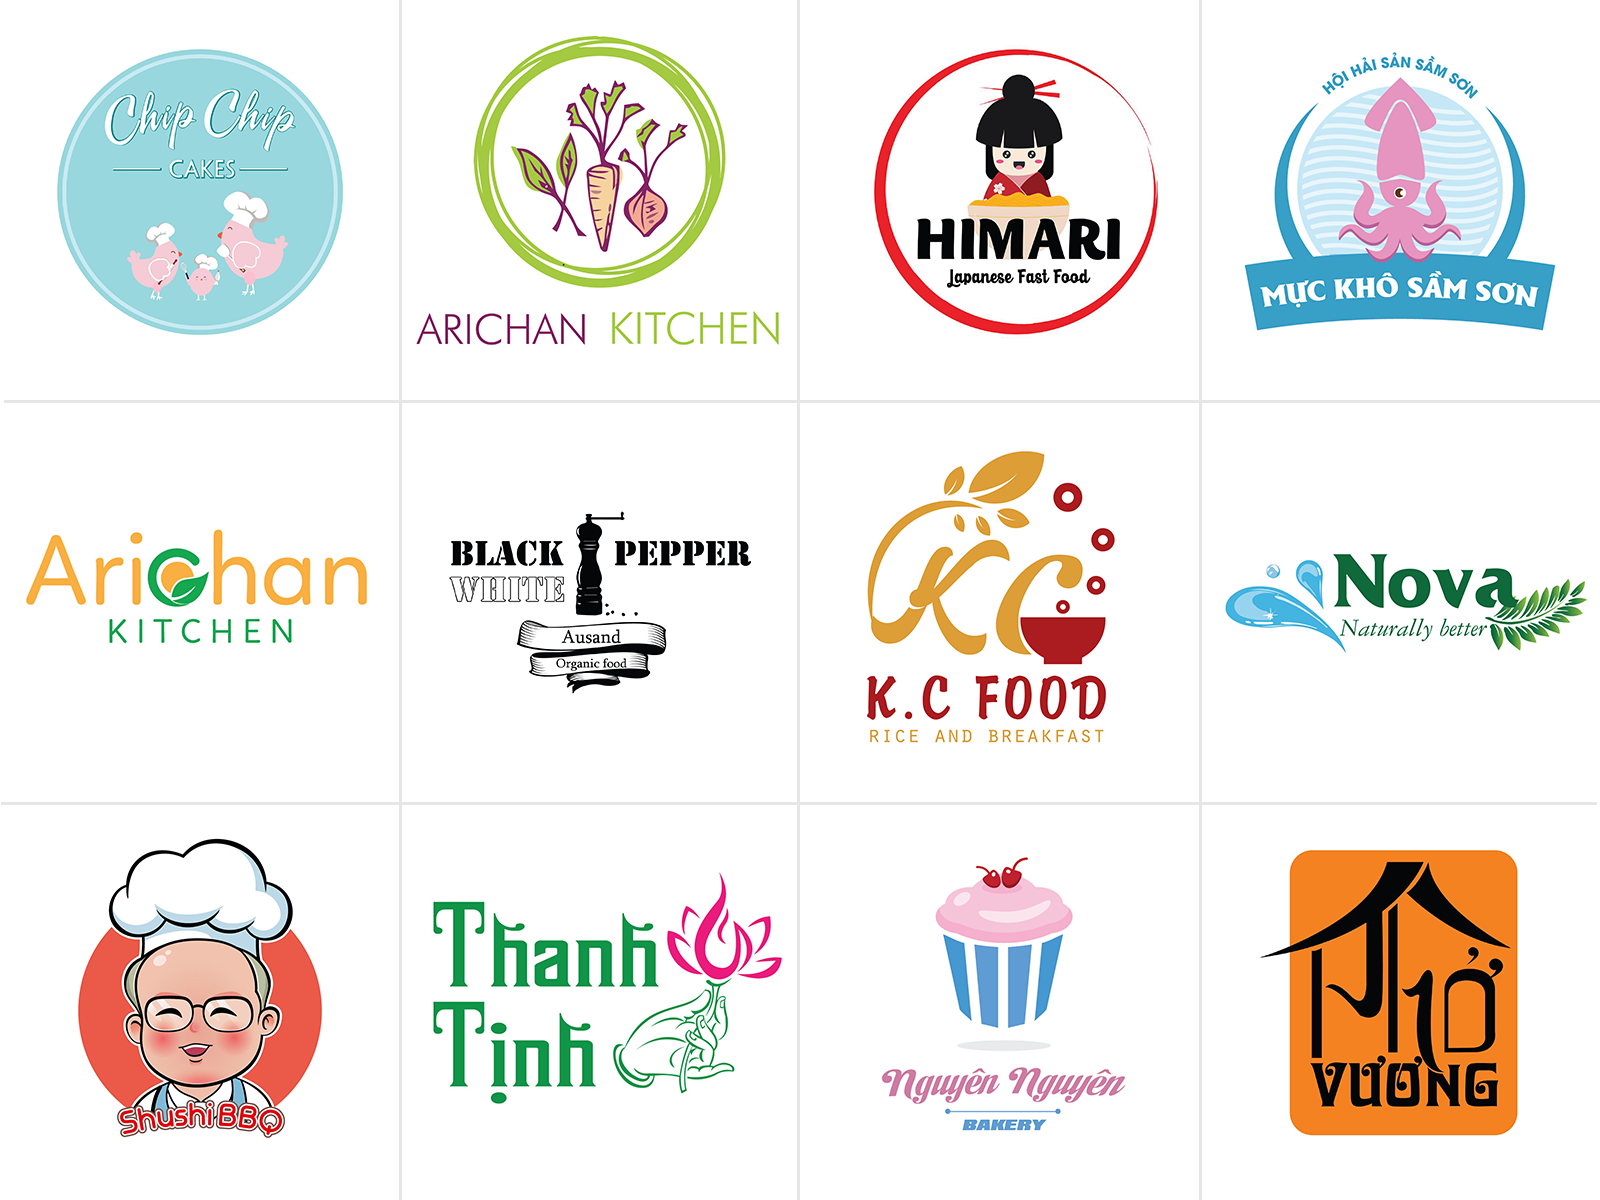 Thiết kế logo ngành thực phẩm: Bạn làm trong ngành thực phẩm và đang tìm kiếm một thiết kế logo phù hợp với sản phẩm của mình? Hãy tham khảo những logo thực phẩm tinh tế mà chúng tôi đã thiết kế và cùng nhau tạo nên một thương hiệu đặc biệt cho sản phẩm của bạn.